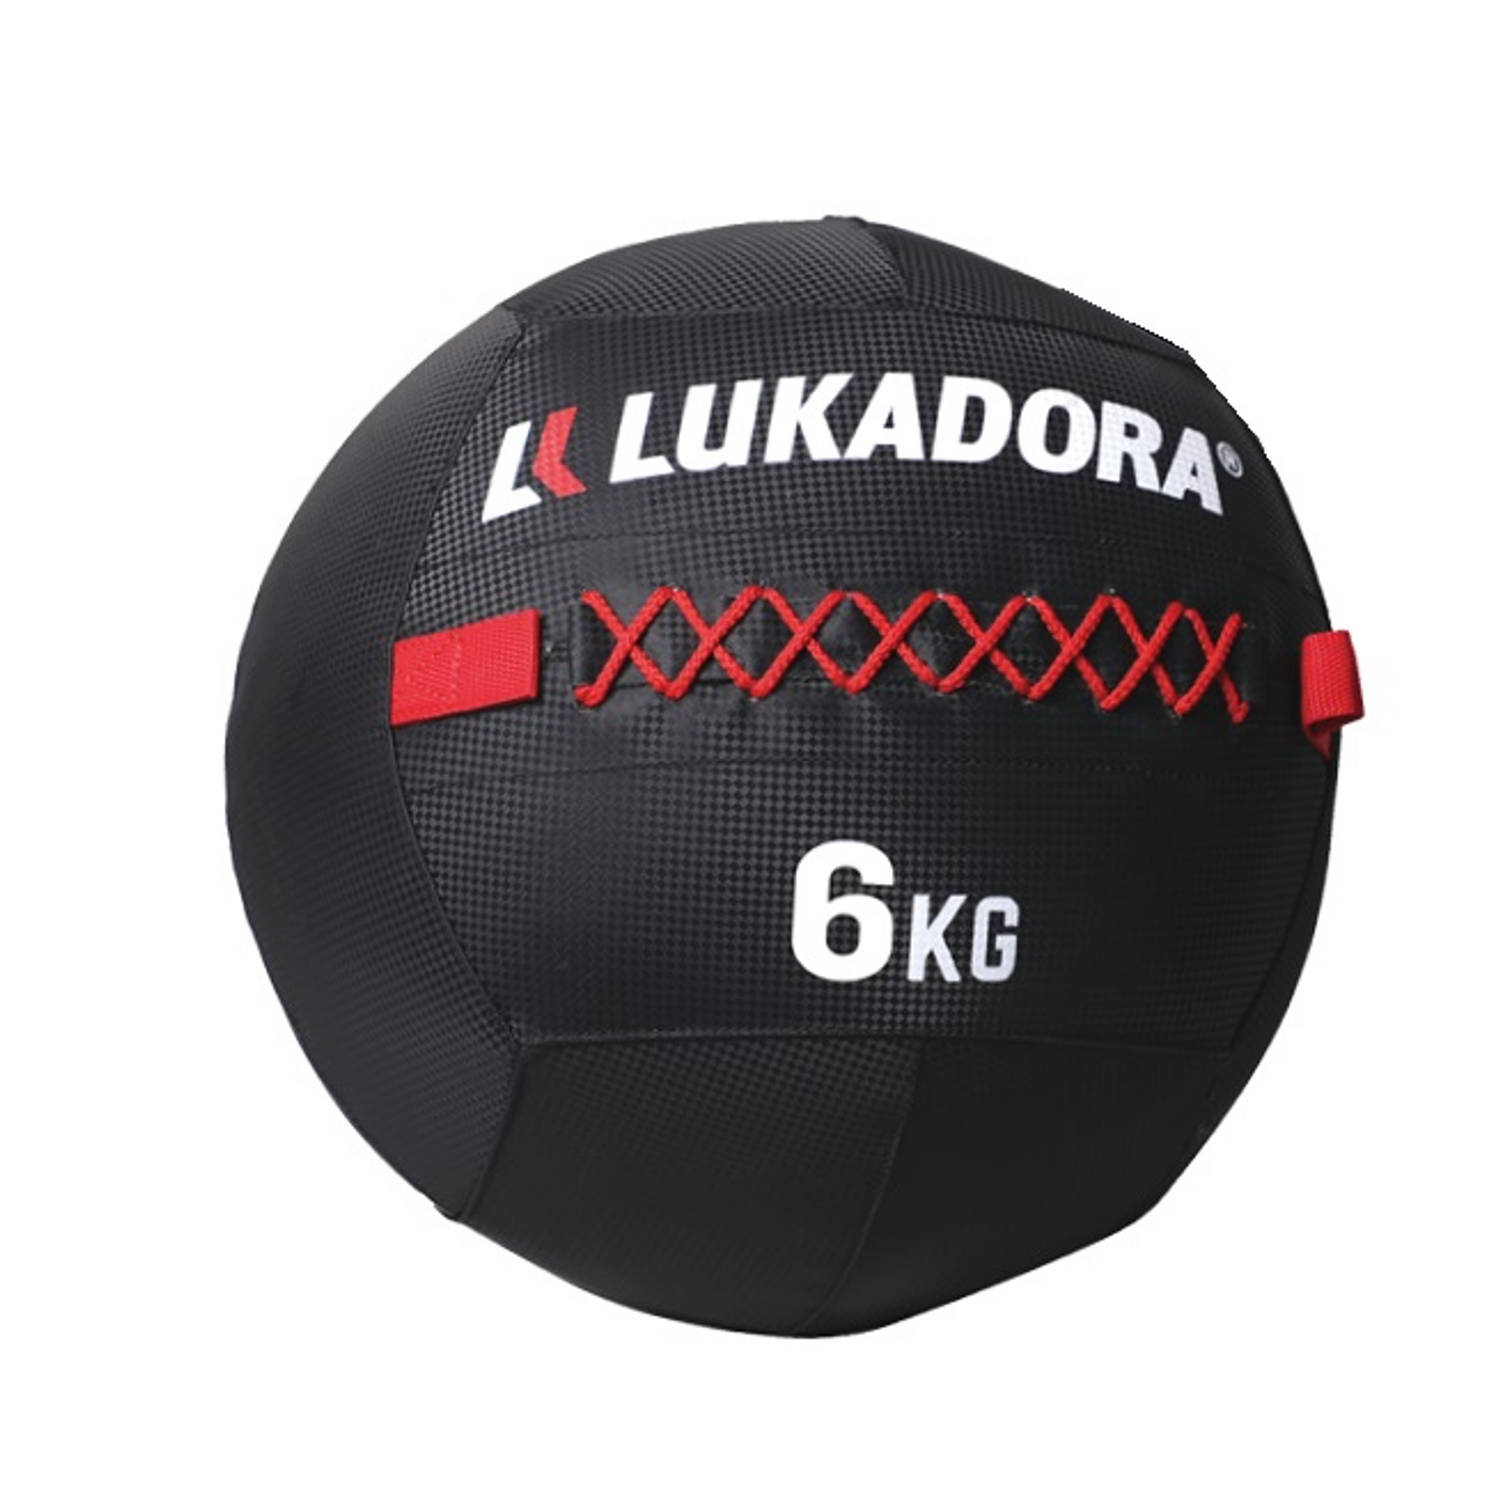 Lukadora - Weight Wall Ball - 6kg